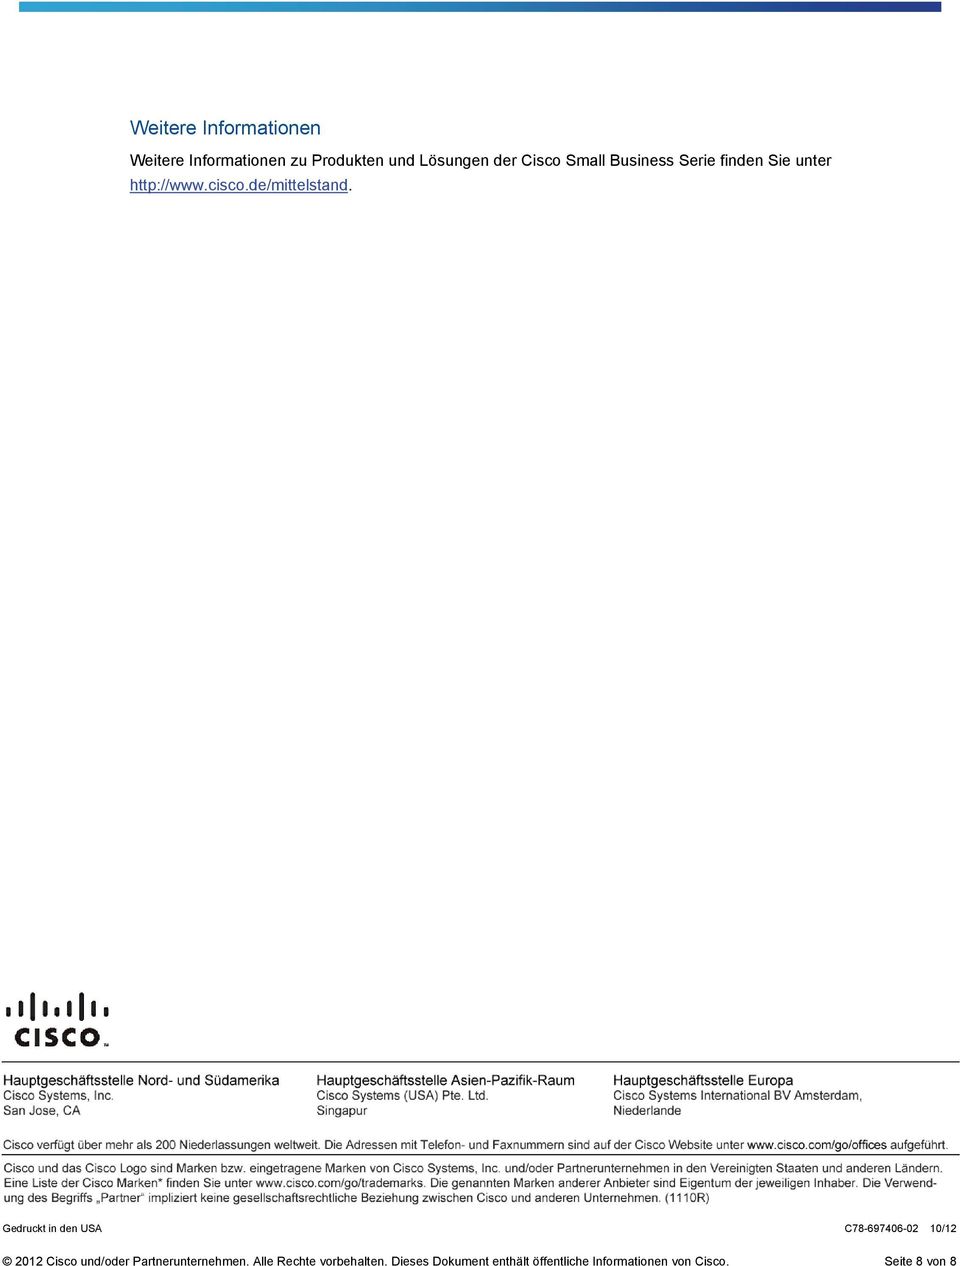 Gedruckt in den USA C78-697406-02 10/12 2012 Cisco und/oder Partnerunternehmen.